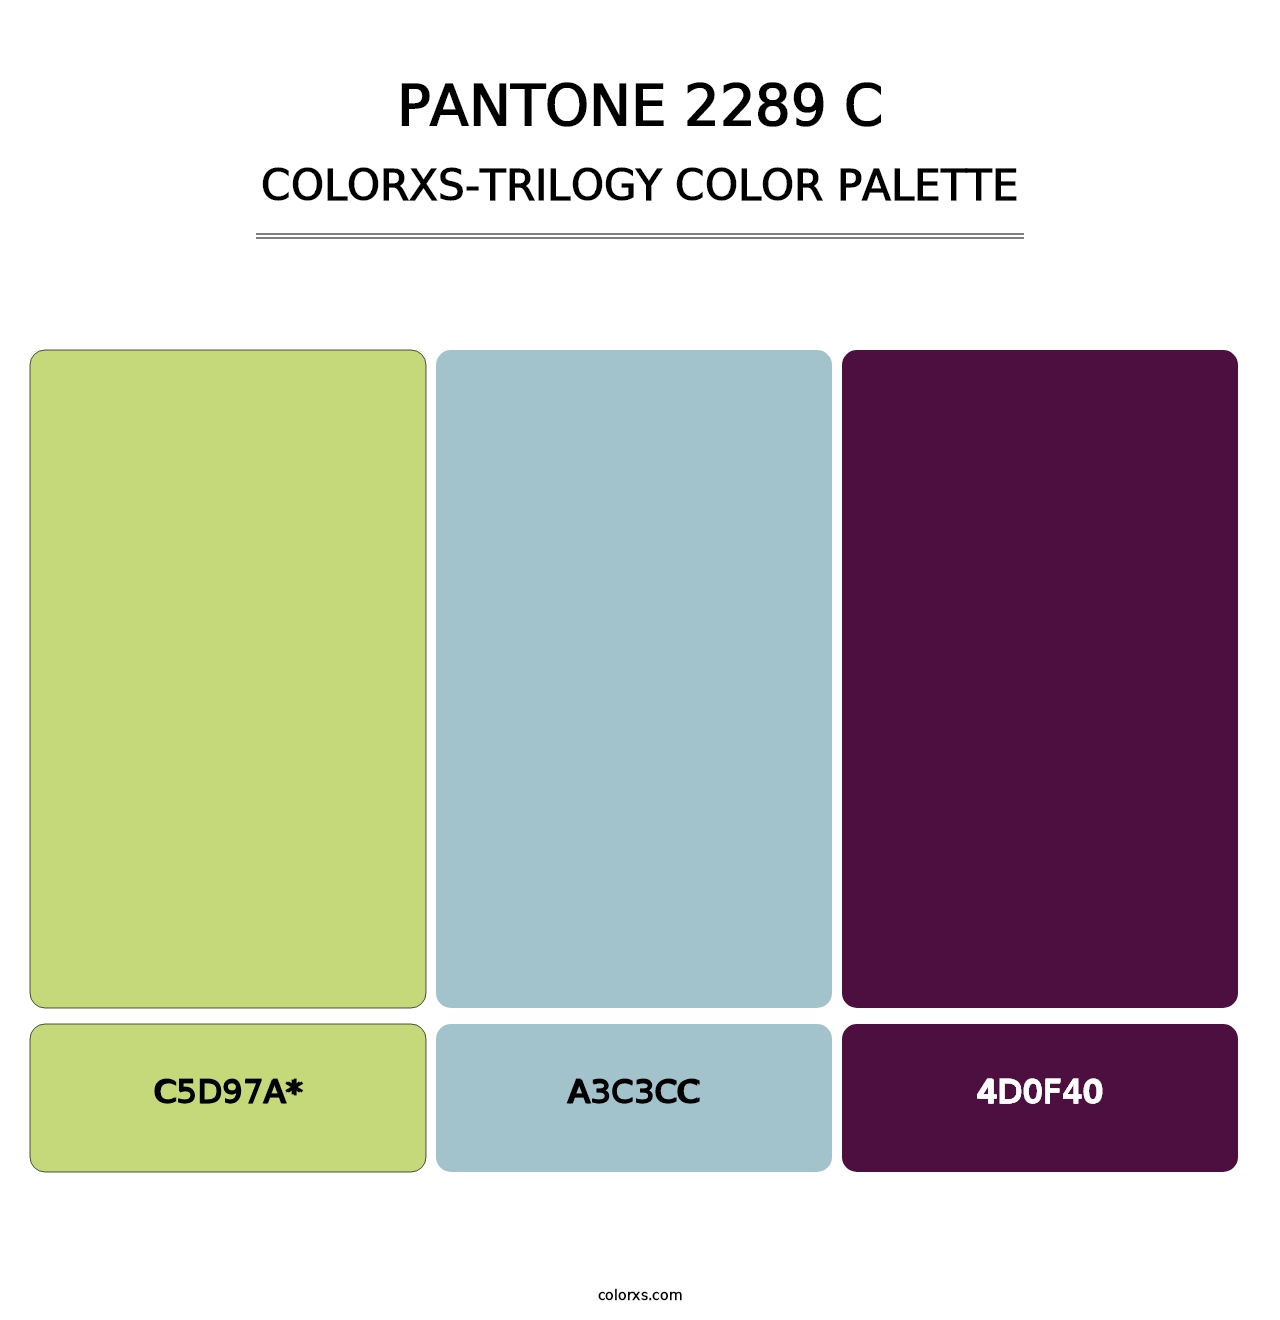 PANTONE 2289 C - Colorxs Trilogy Palette